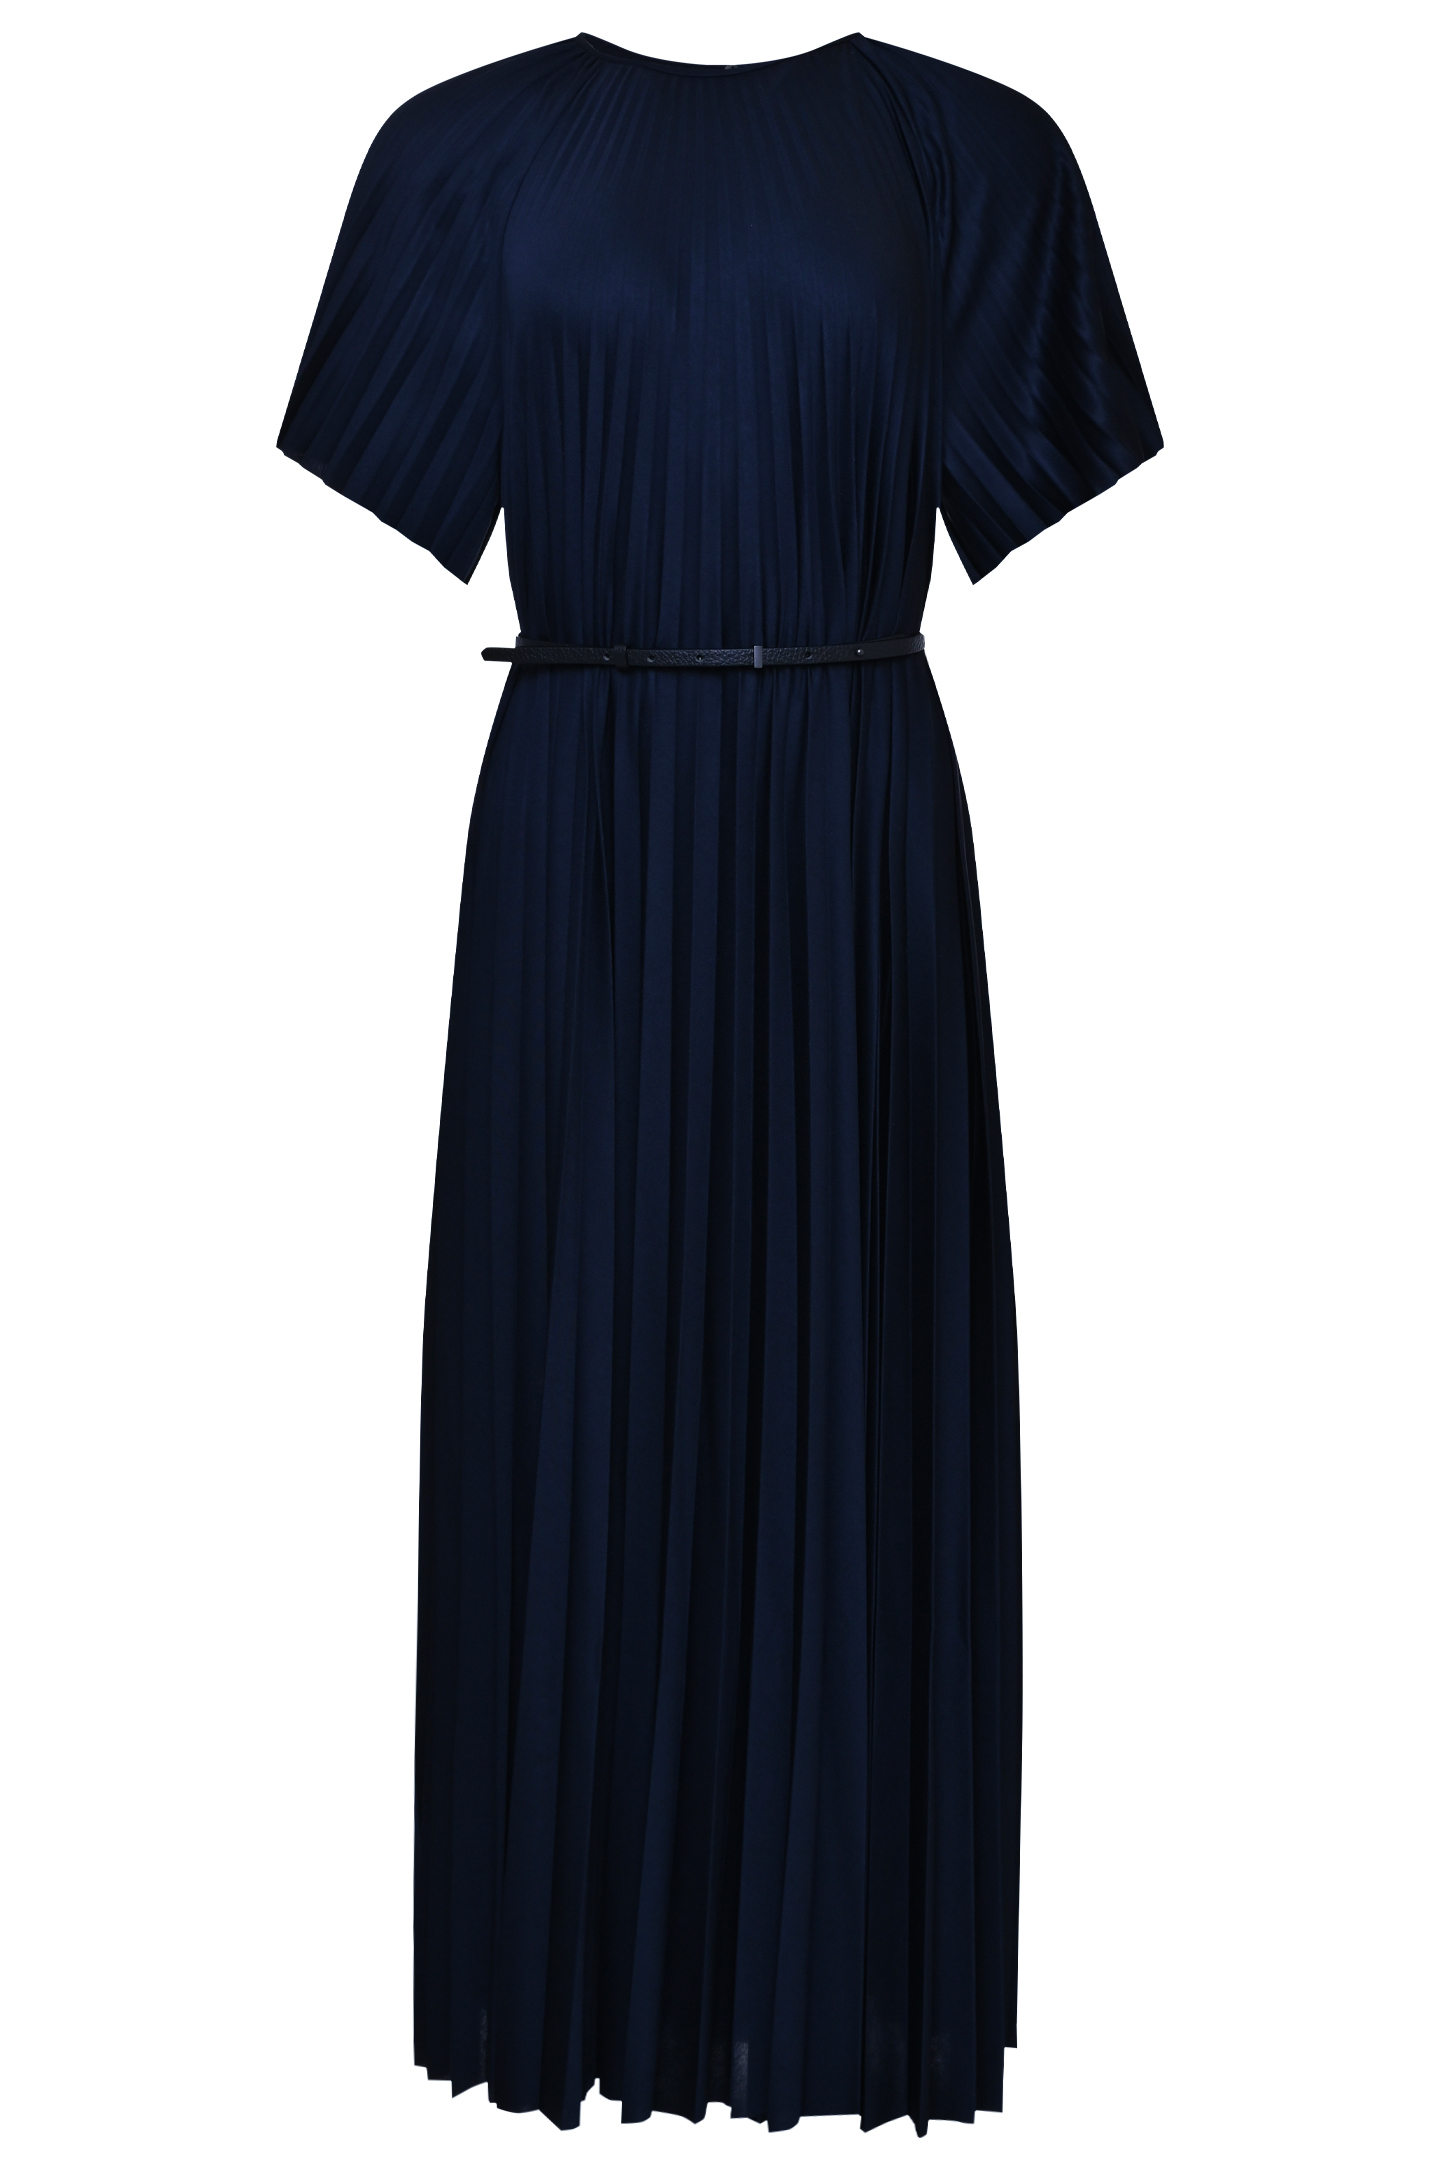 Платье FABIANA FILIPPI ABD273W184H361, цвет: Синий, Женский